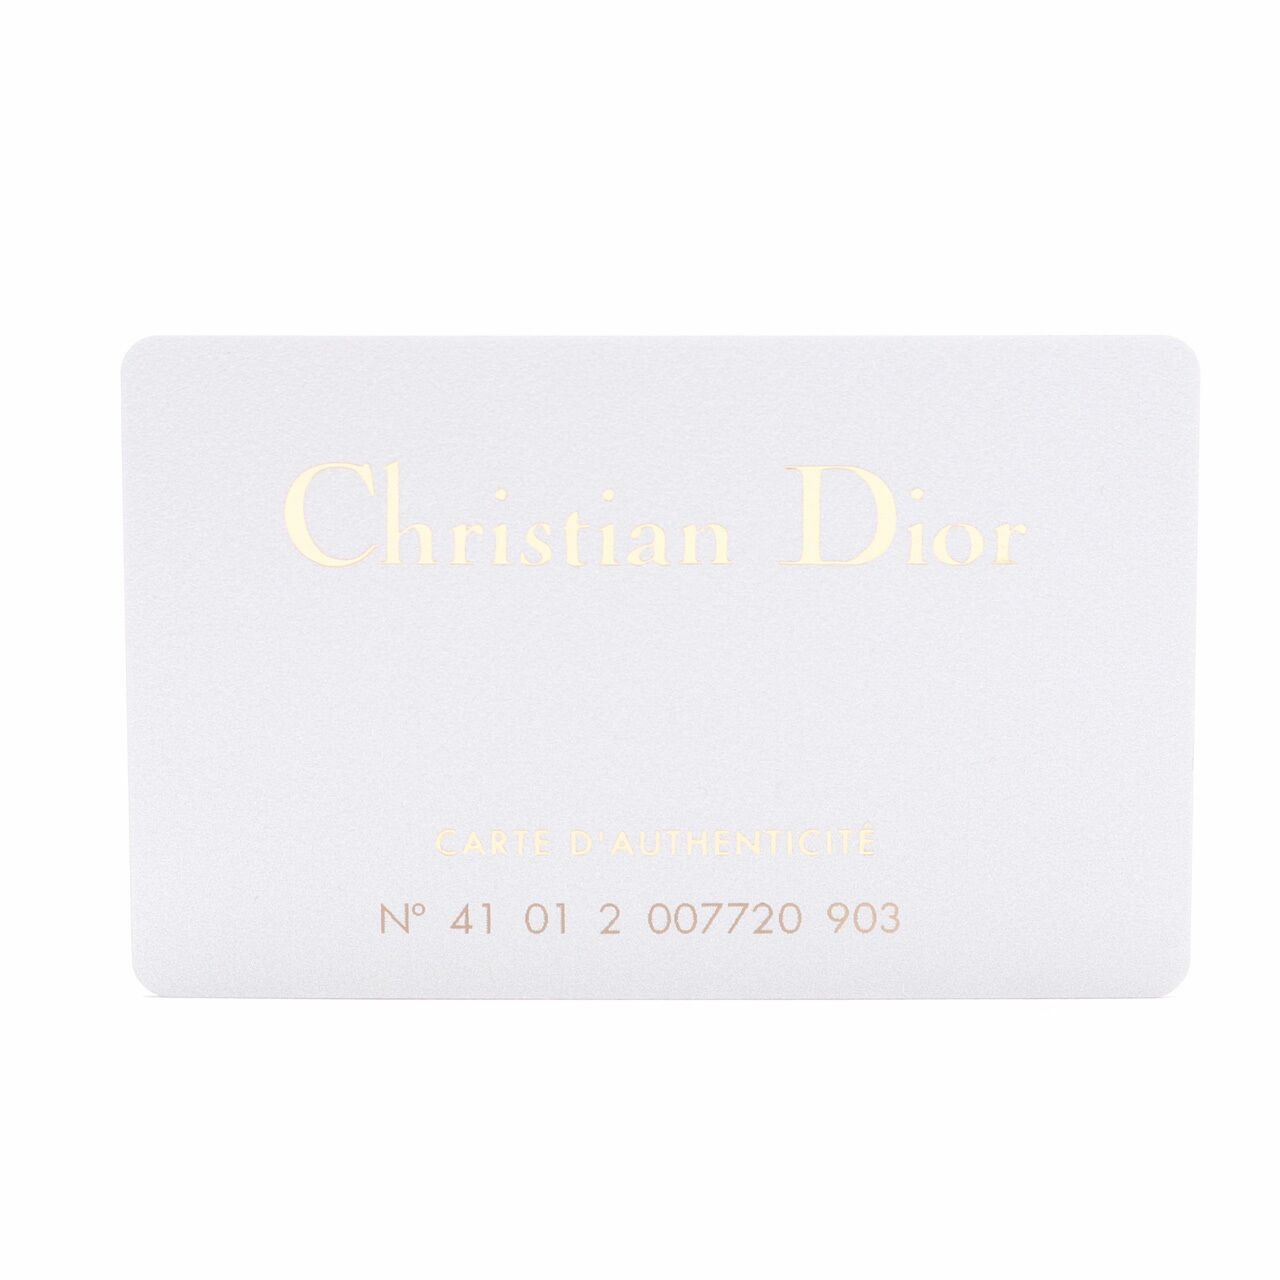 Christian Christian Dior Vintage Fur Small Handbag